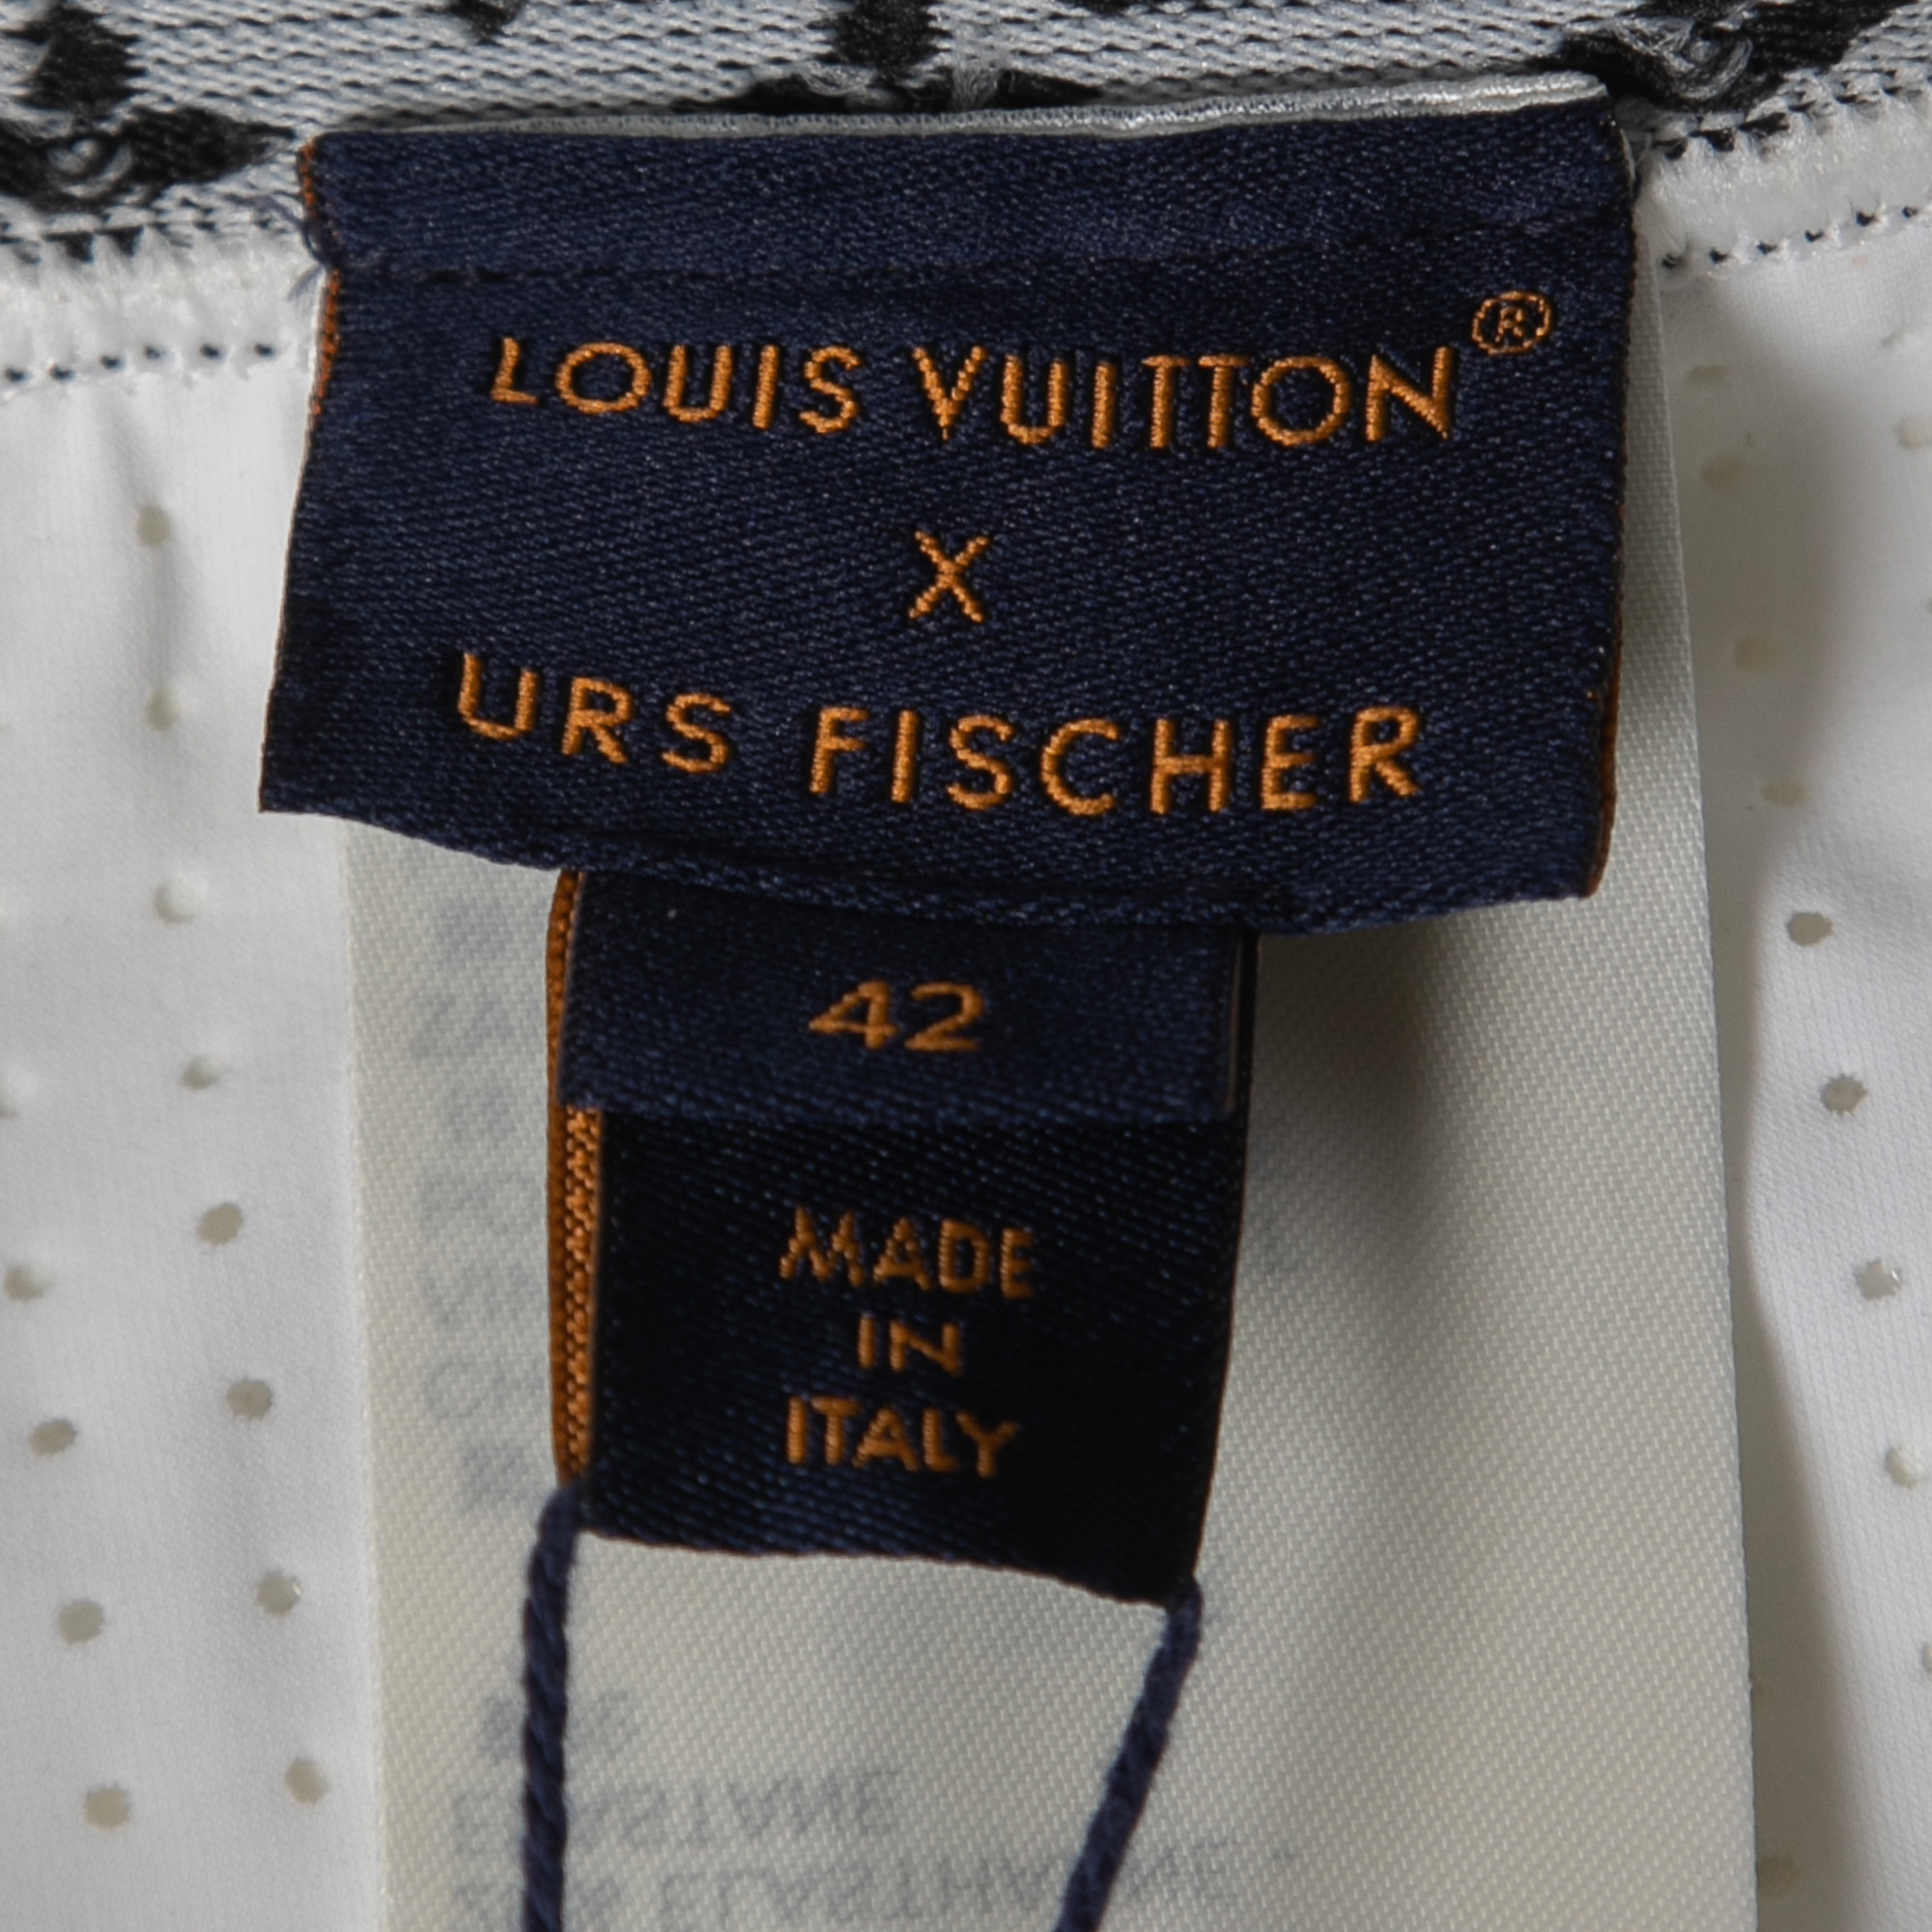 Louis Vuitton X URS Fischer White Jersey Flight Mode Cycling Shorts  L